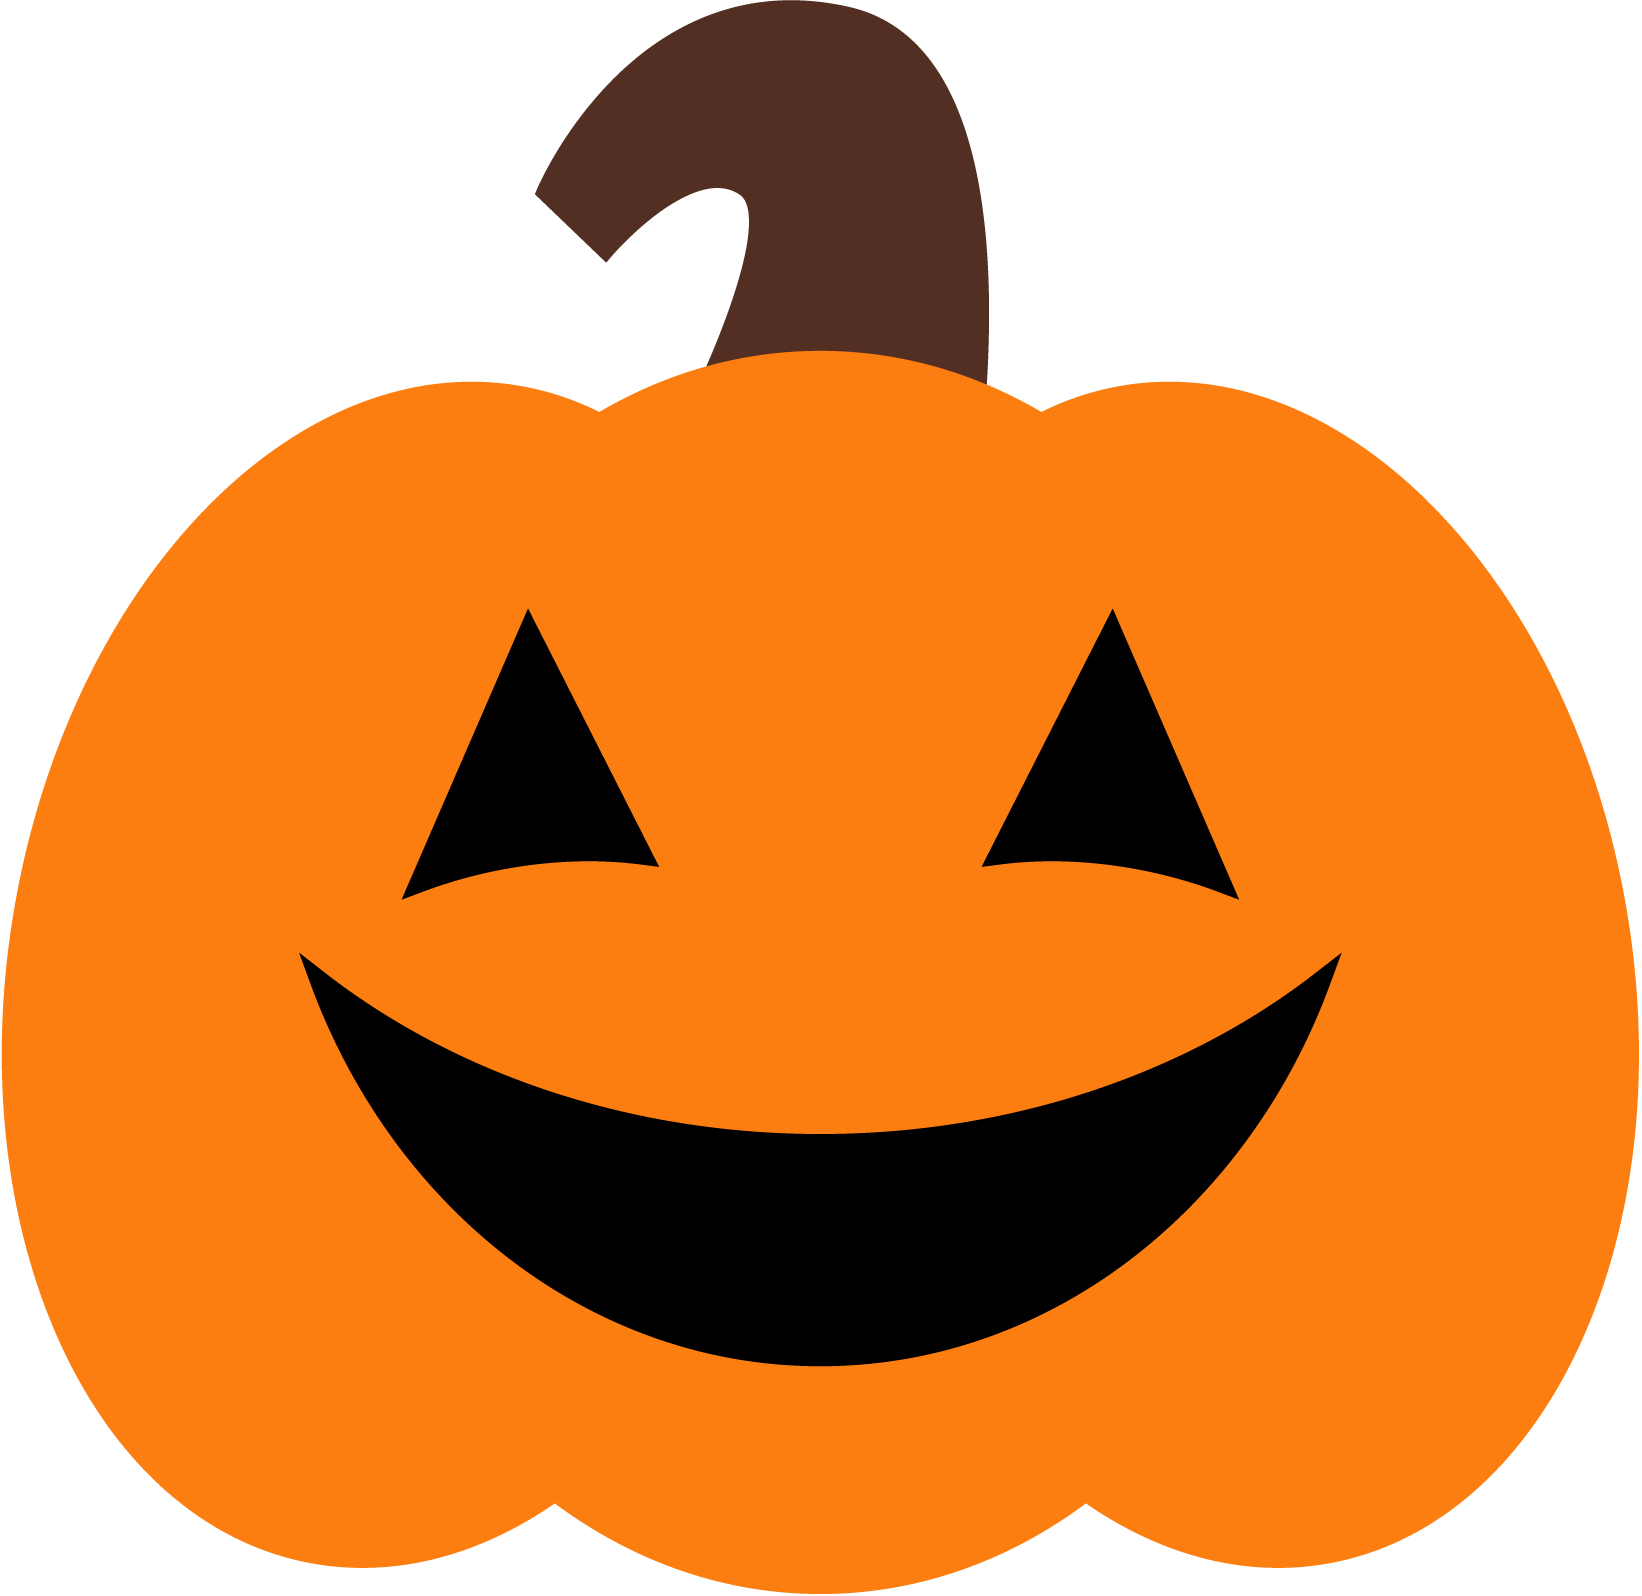 Halloween pumpkin clipart fre - Pumpkin Free Clip Art